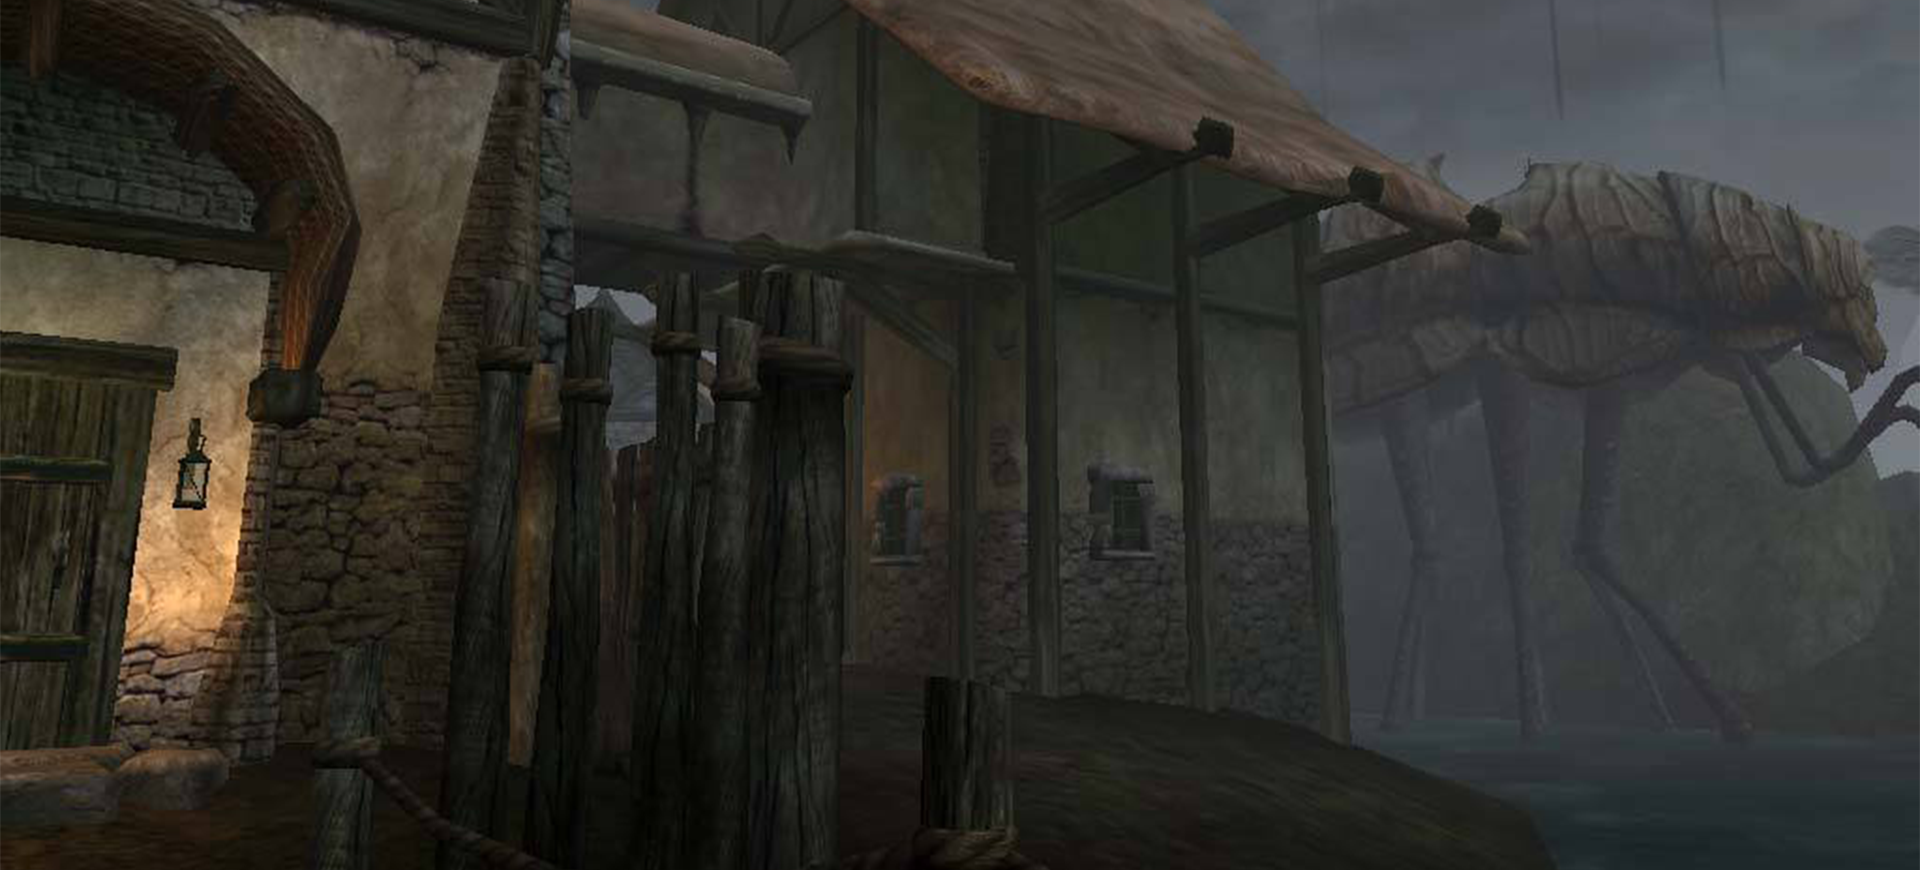 BREAKING - The Elder Scrolls VI Enters Early Development! 